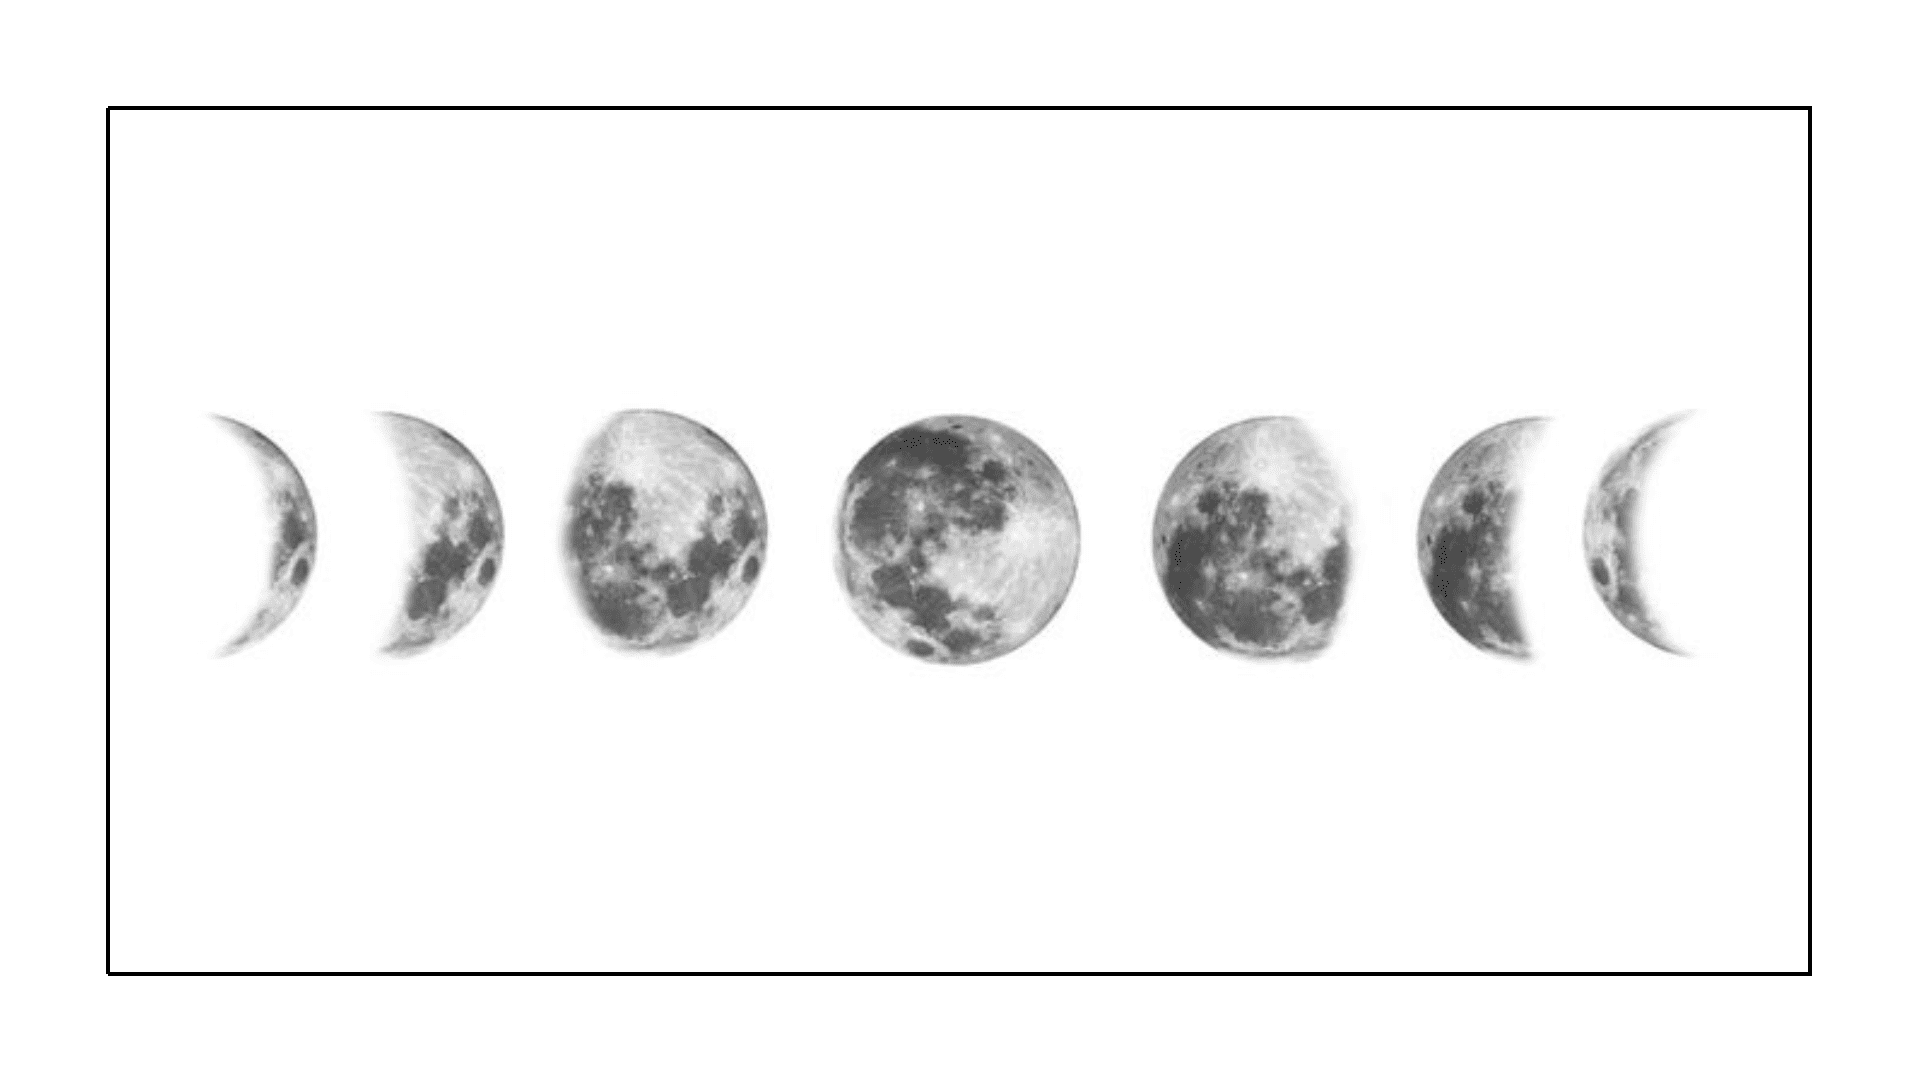 Lua no mapa astral - fases da lua